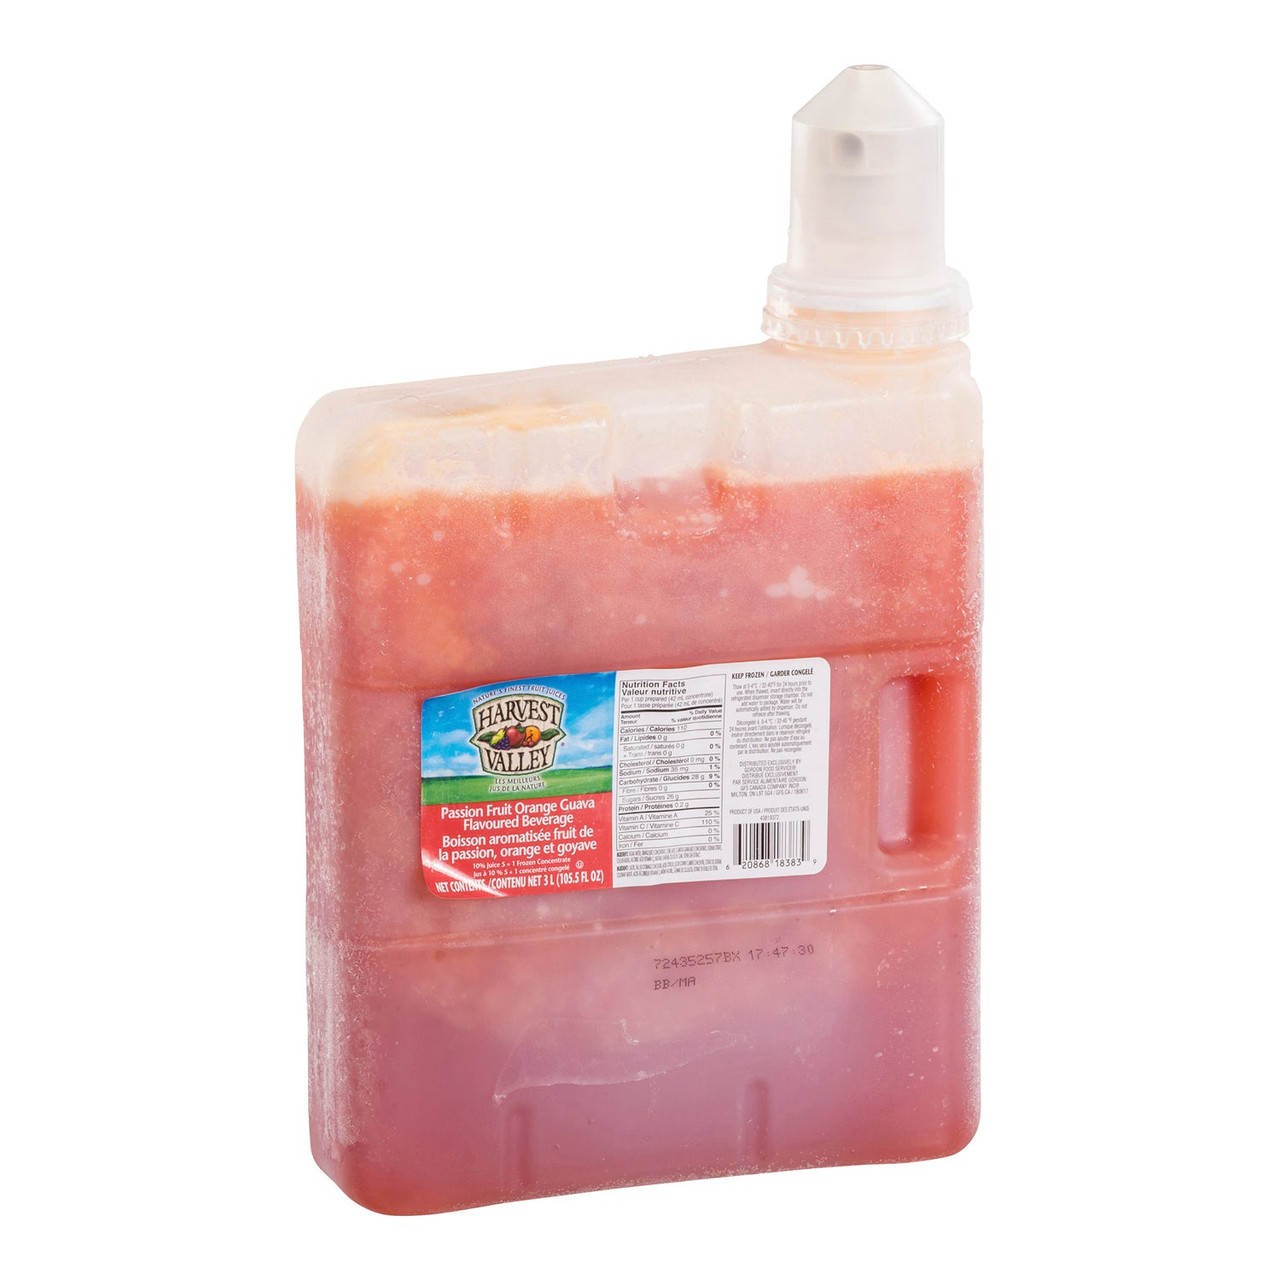 Harvest Valley Passion Orange Guava Juice, 10 Percent, 5+1 Frozen | 3L/Unit, 3 Units/Case